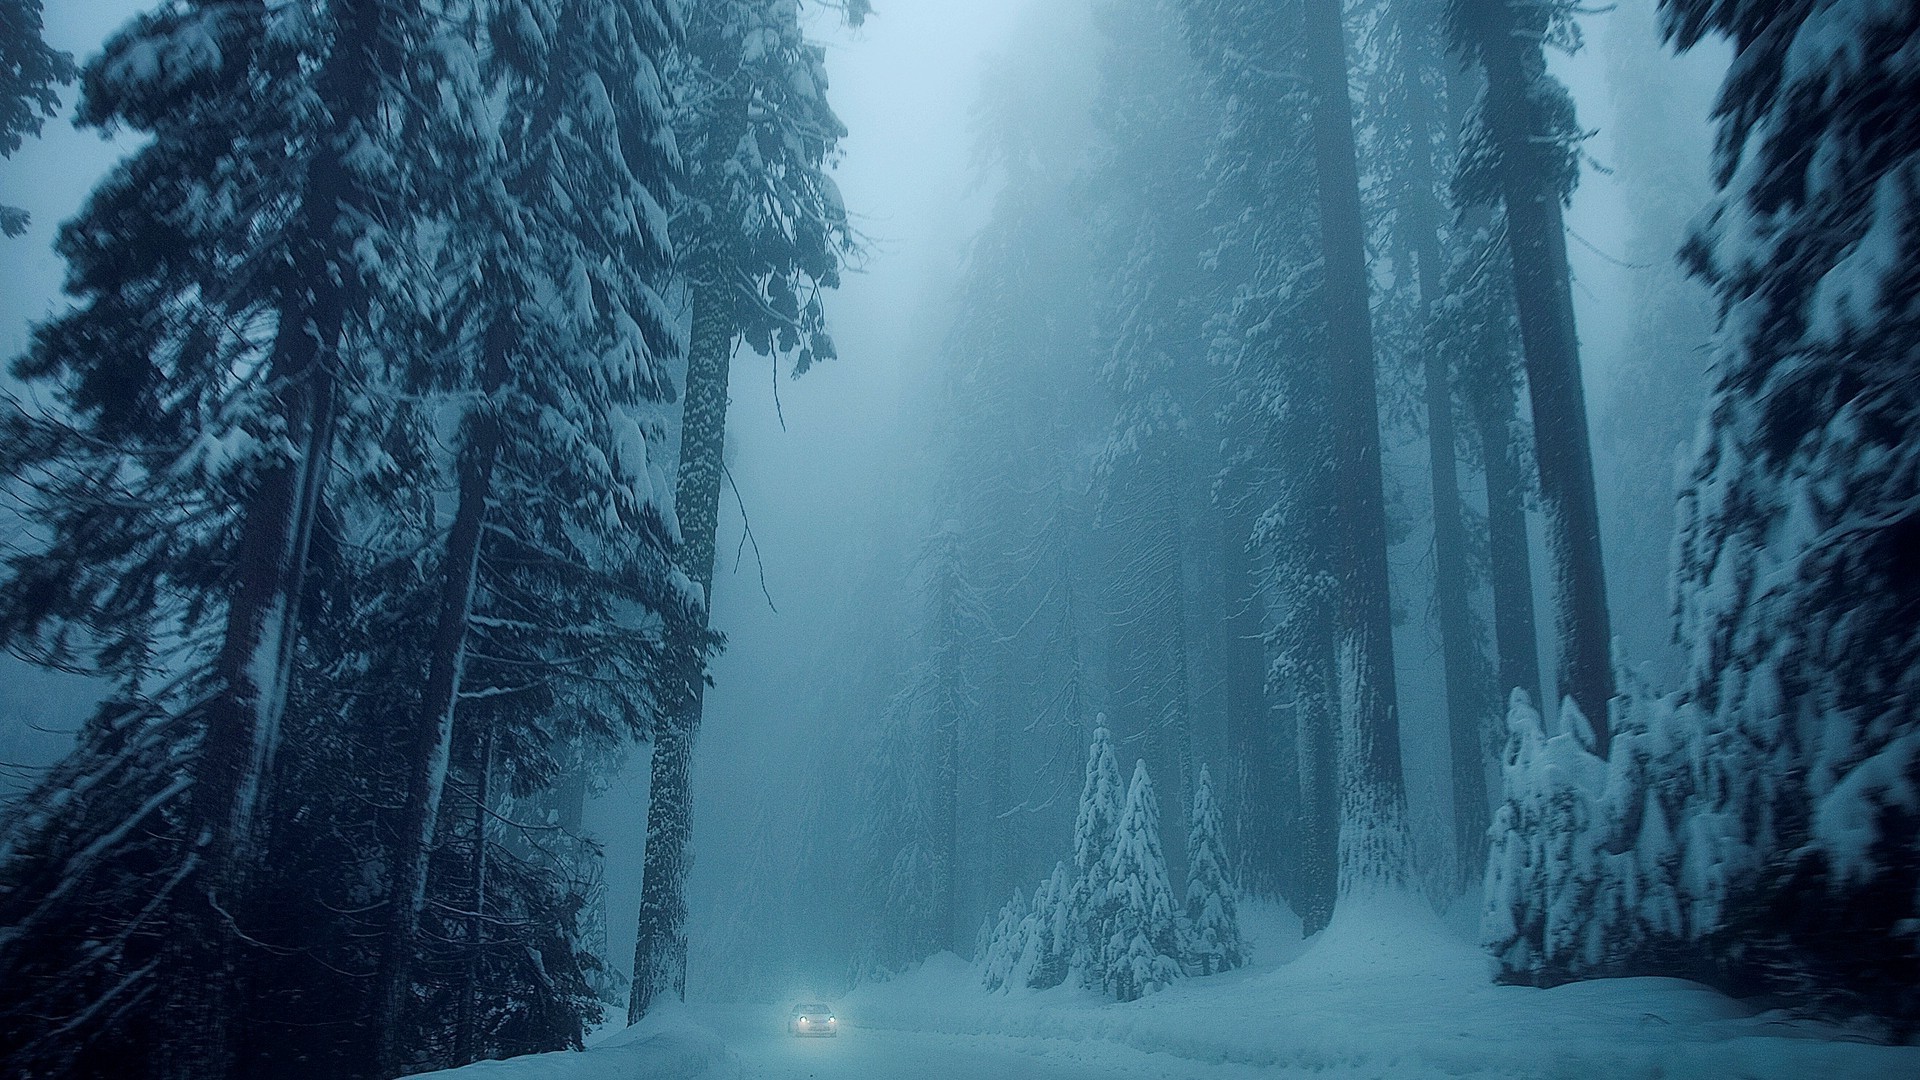 зима снег туман холодная воды туман лед пейзаж древесины мороз хвойные дерево на открытом воздухе путешествия природа